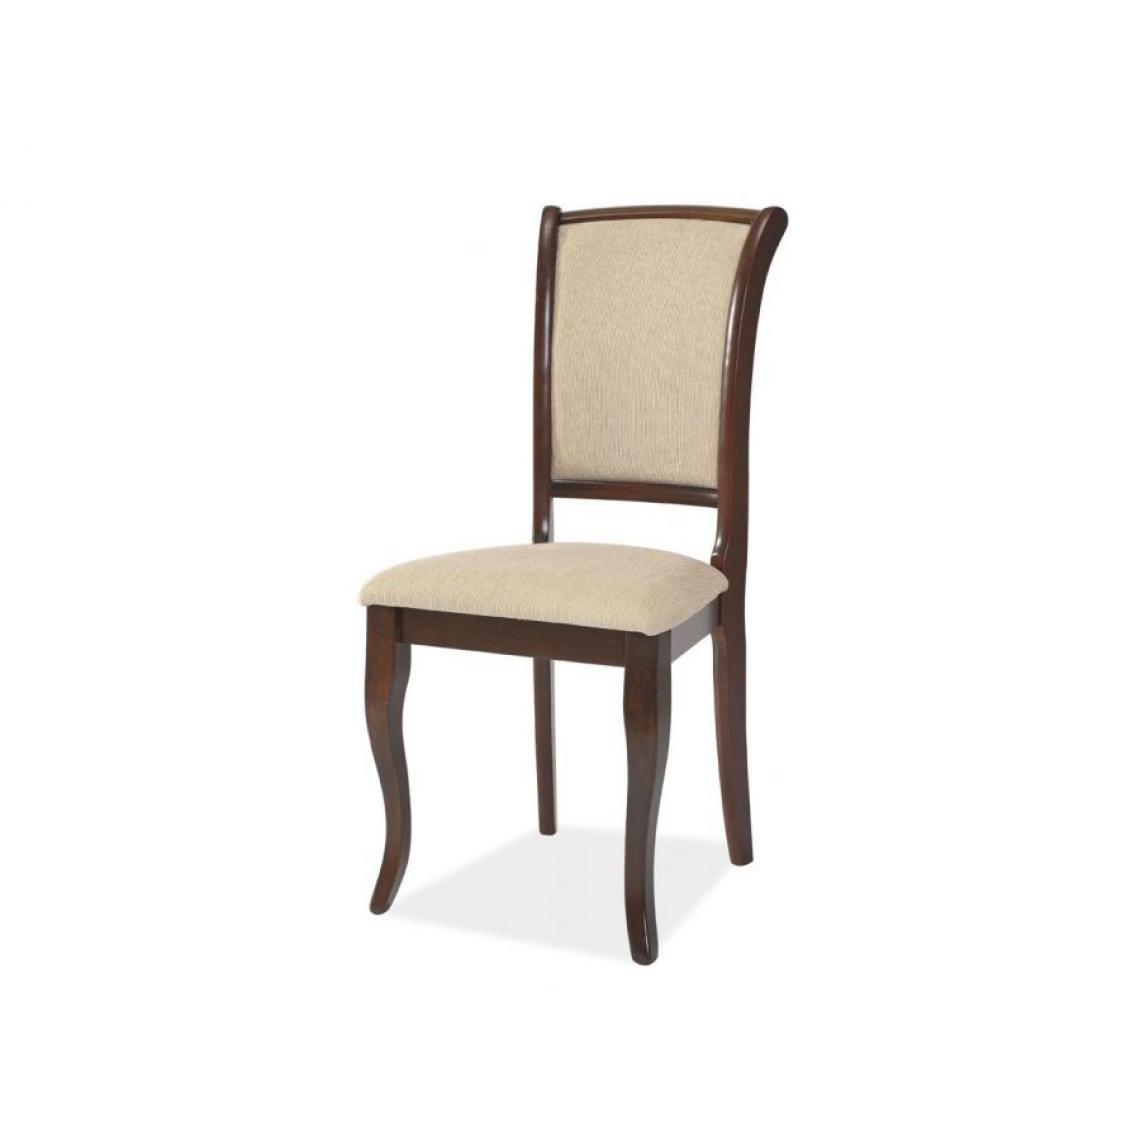 Hucoco - MINIR | Belle chaise style classique salon/salle à manger | 96x45x42cm | Tissu haute qualité | Cadre robuste en bois - Beige - Chaises